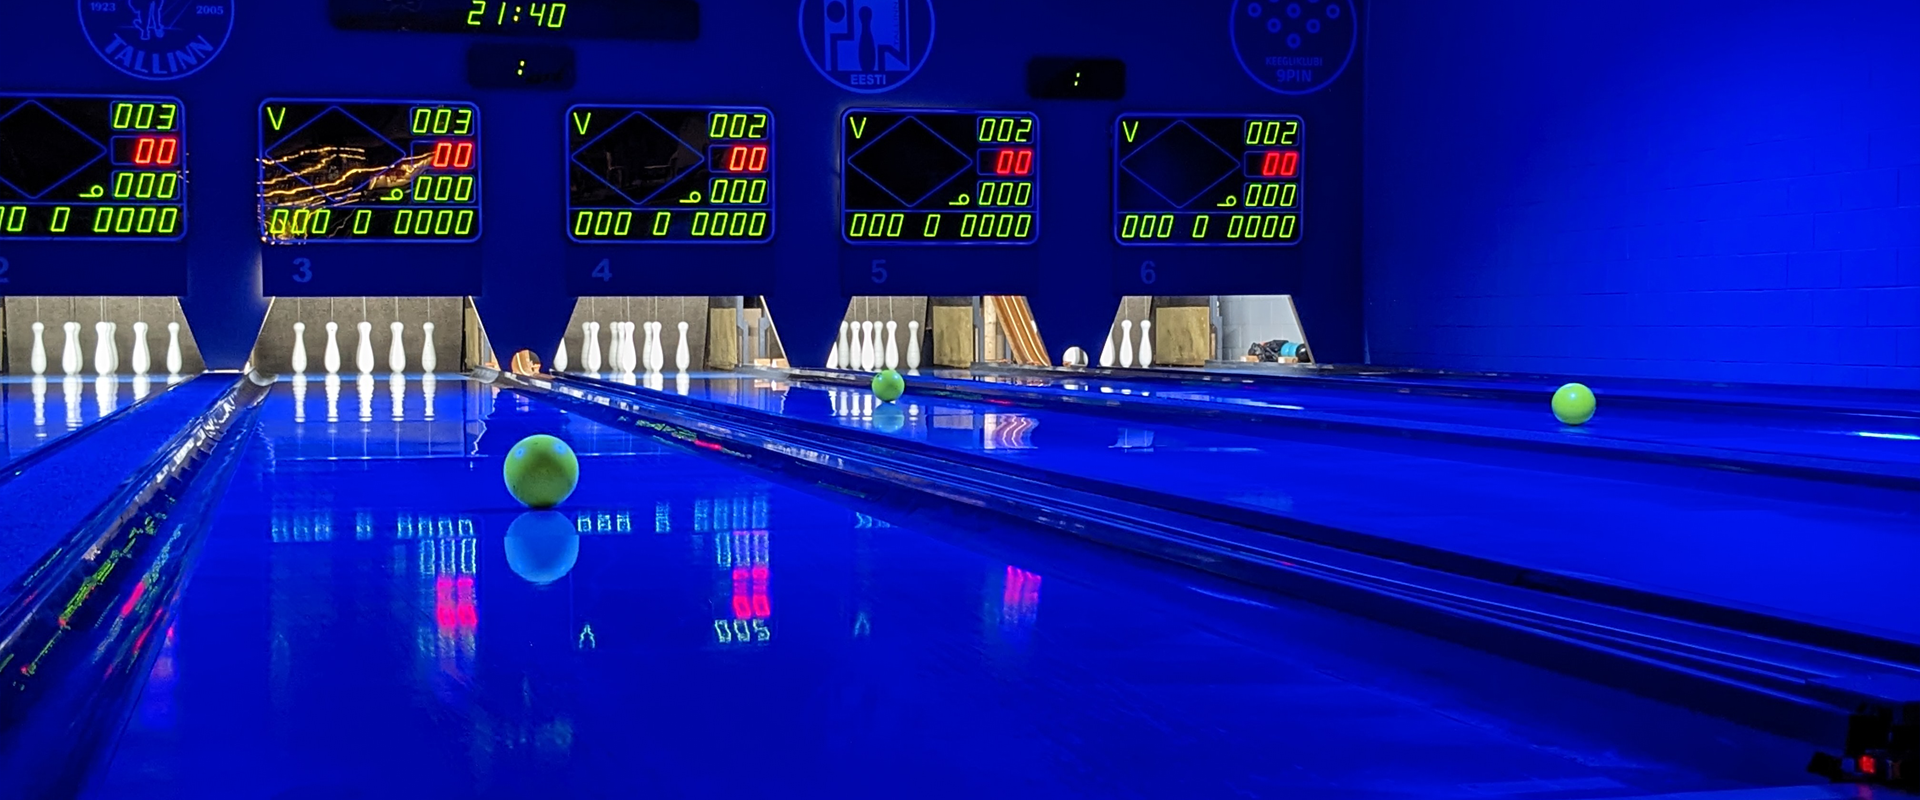 Nine-pin bowling at night